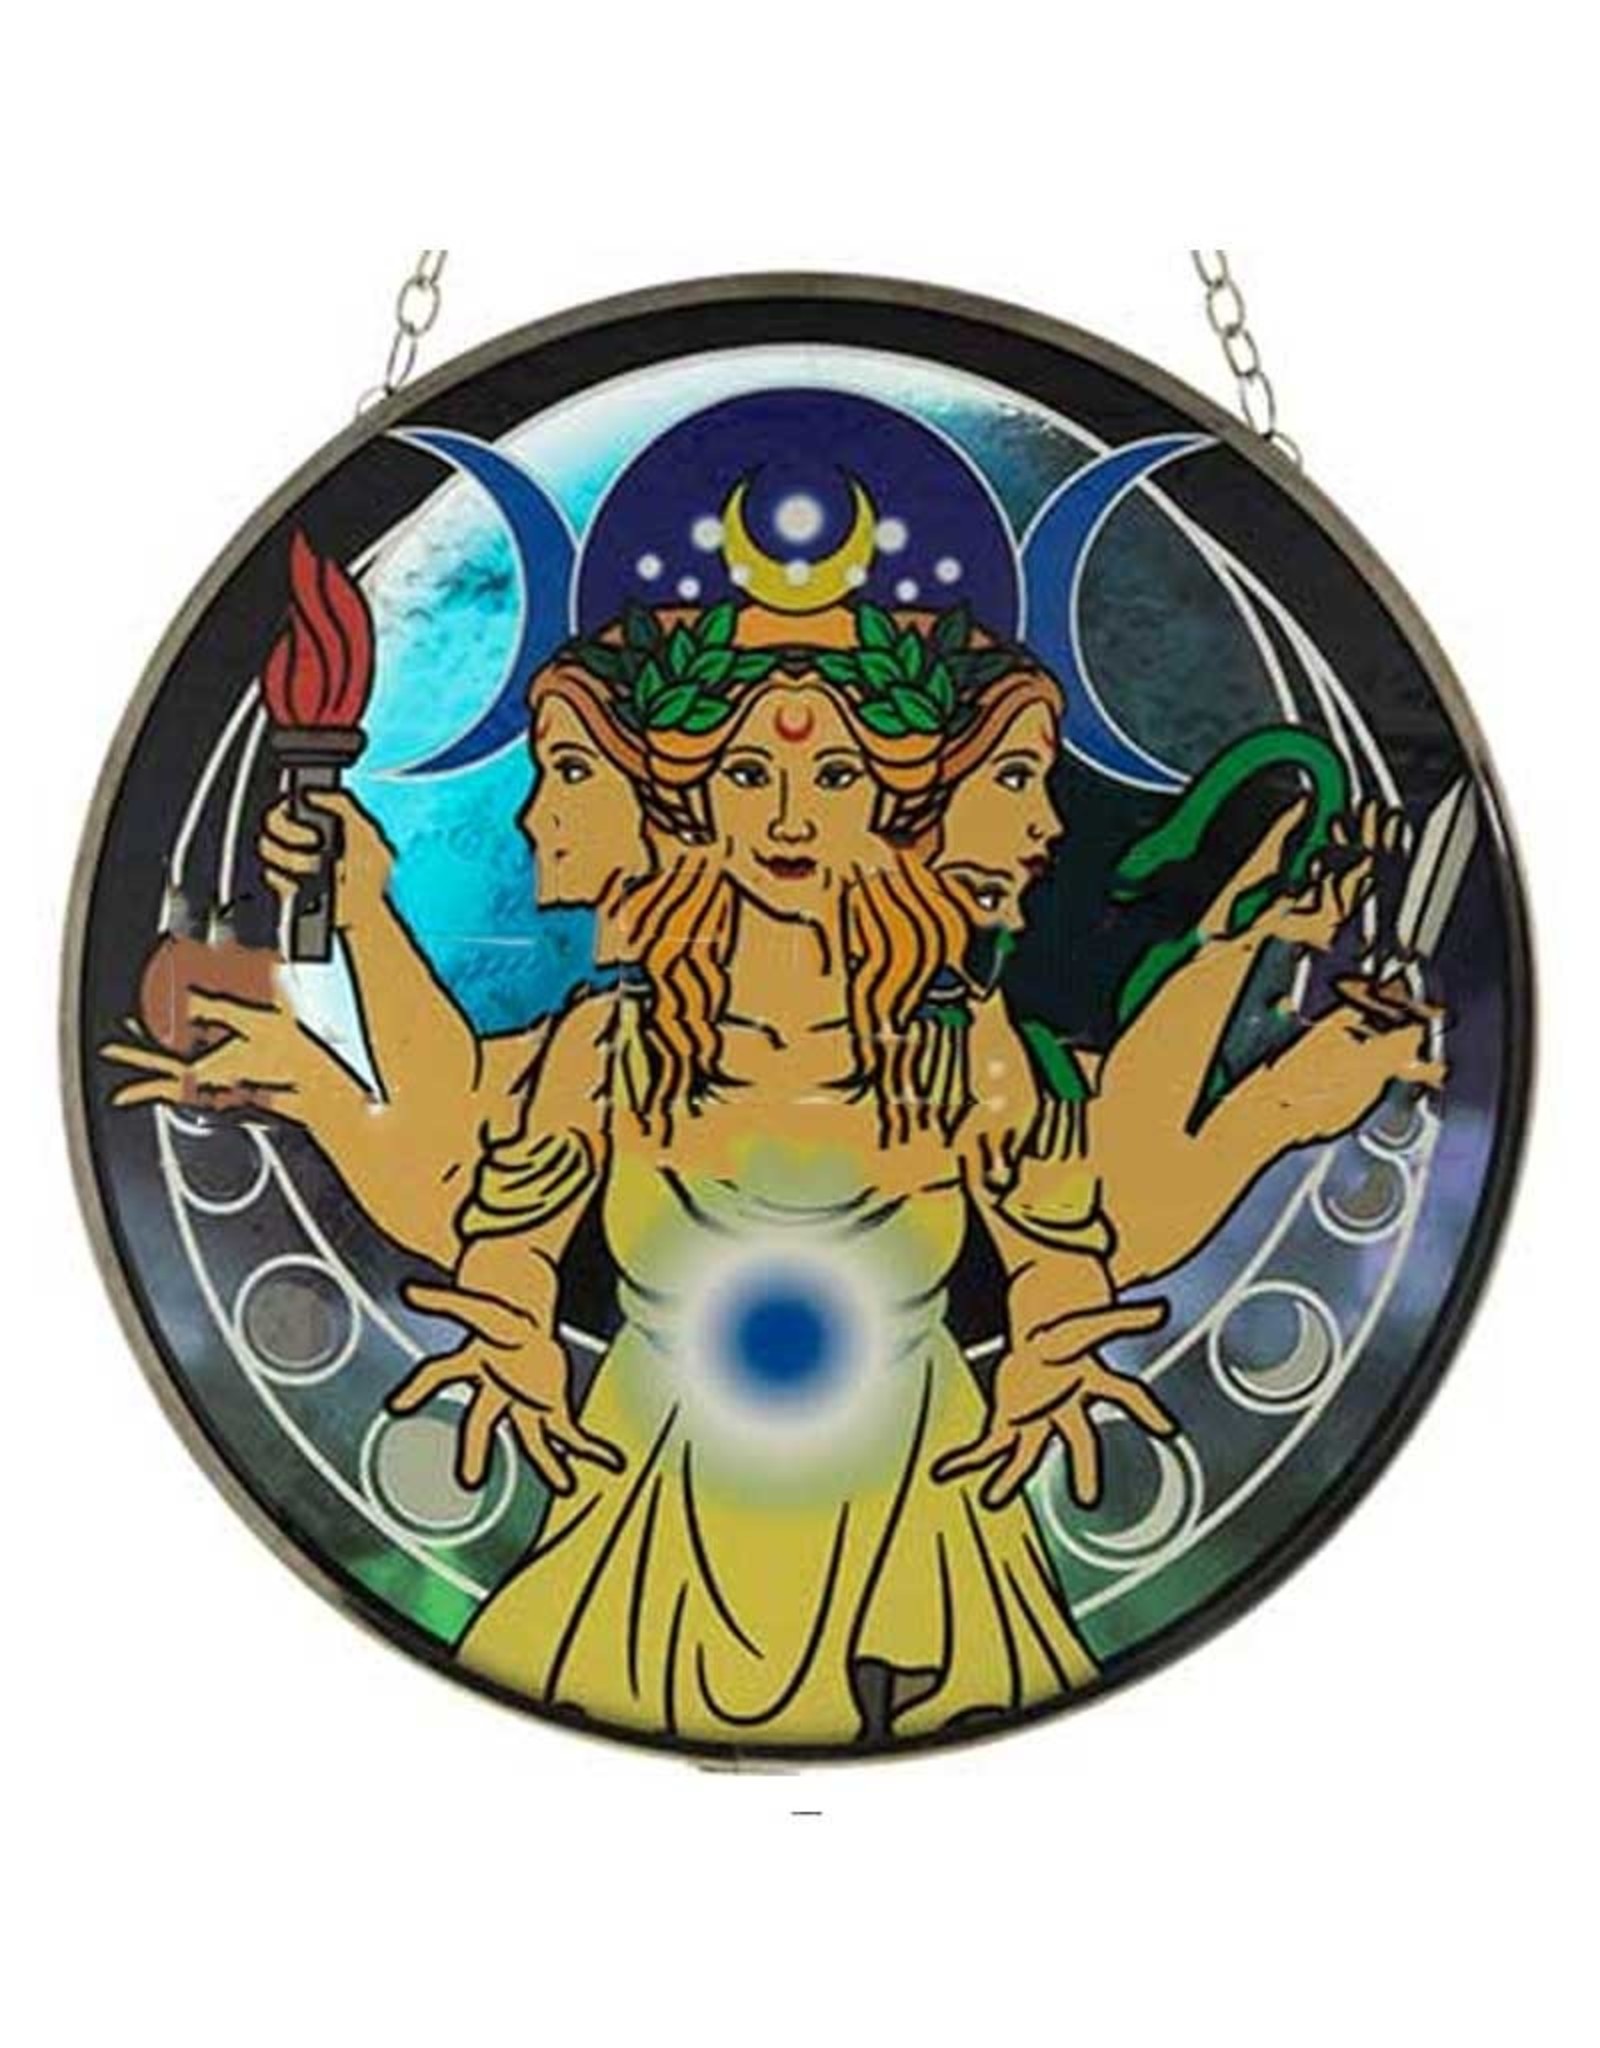 Triple Goddess 6" Suncatcher